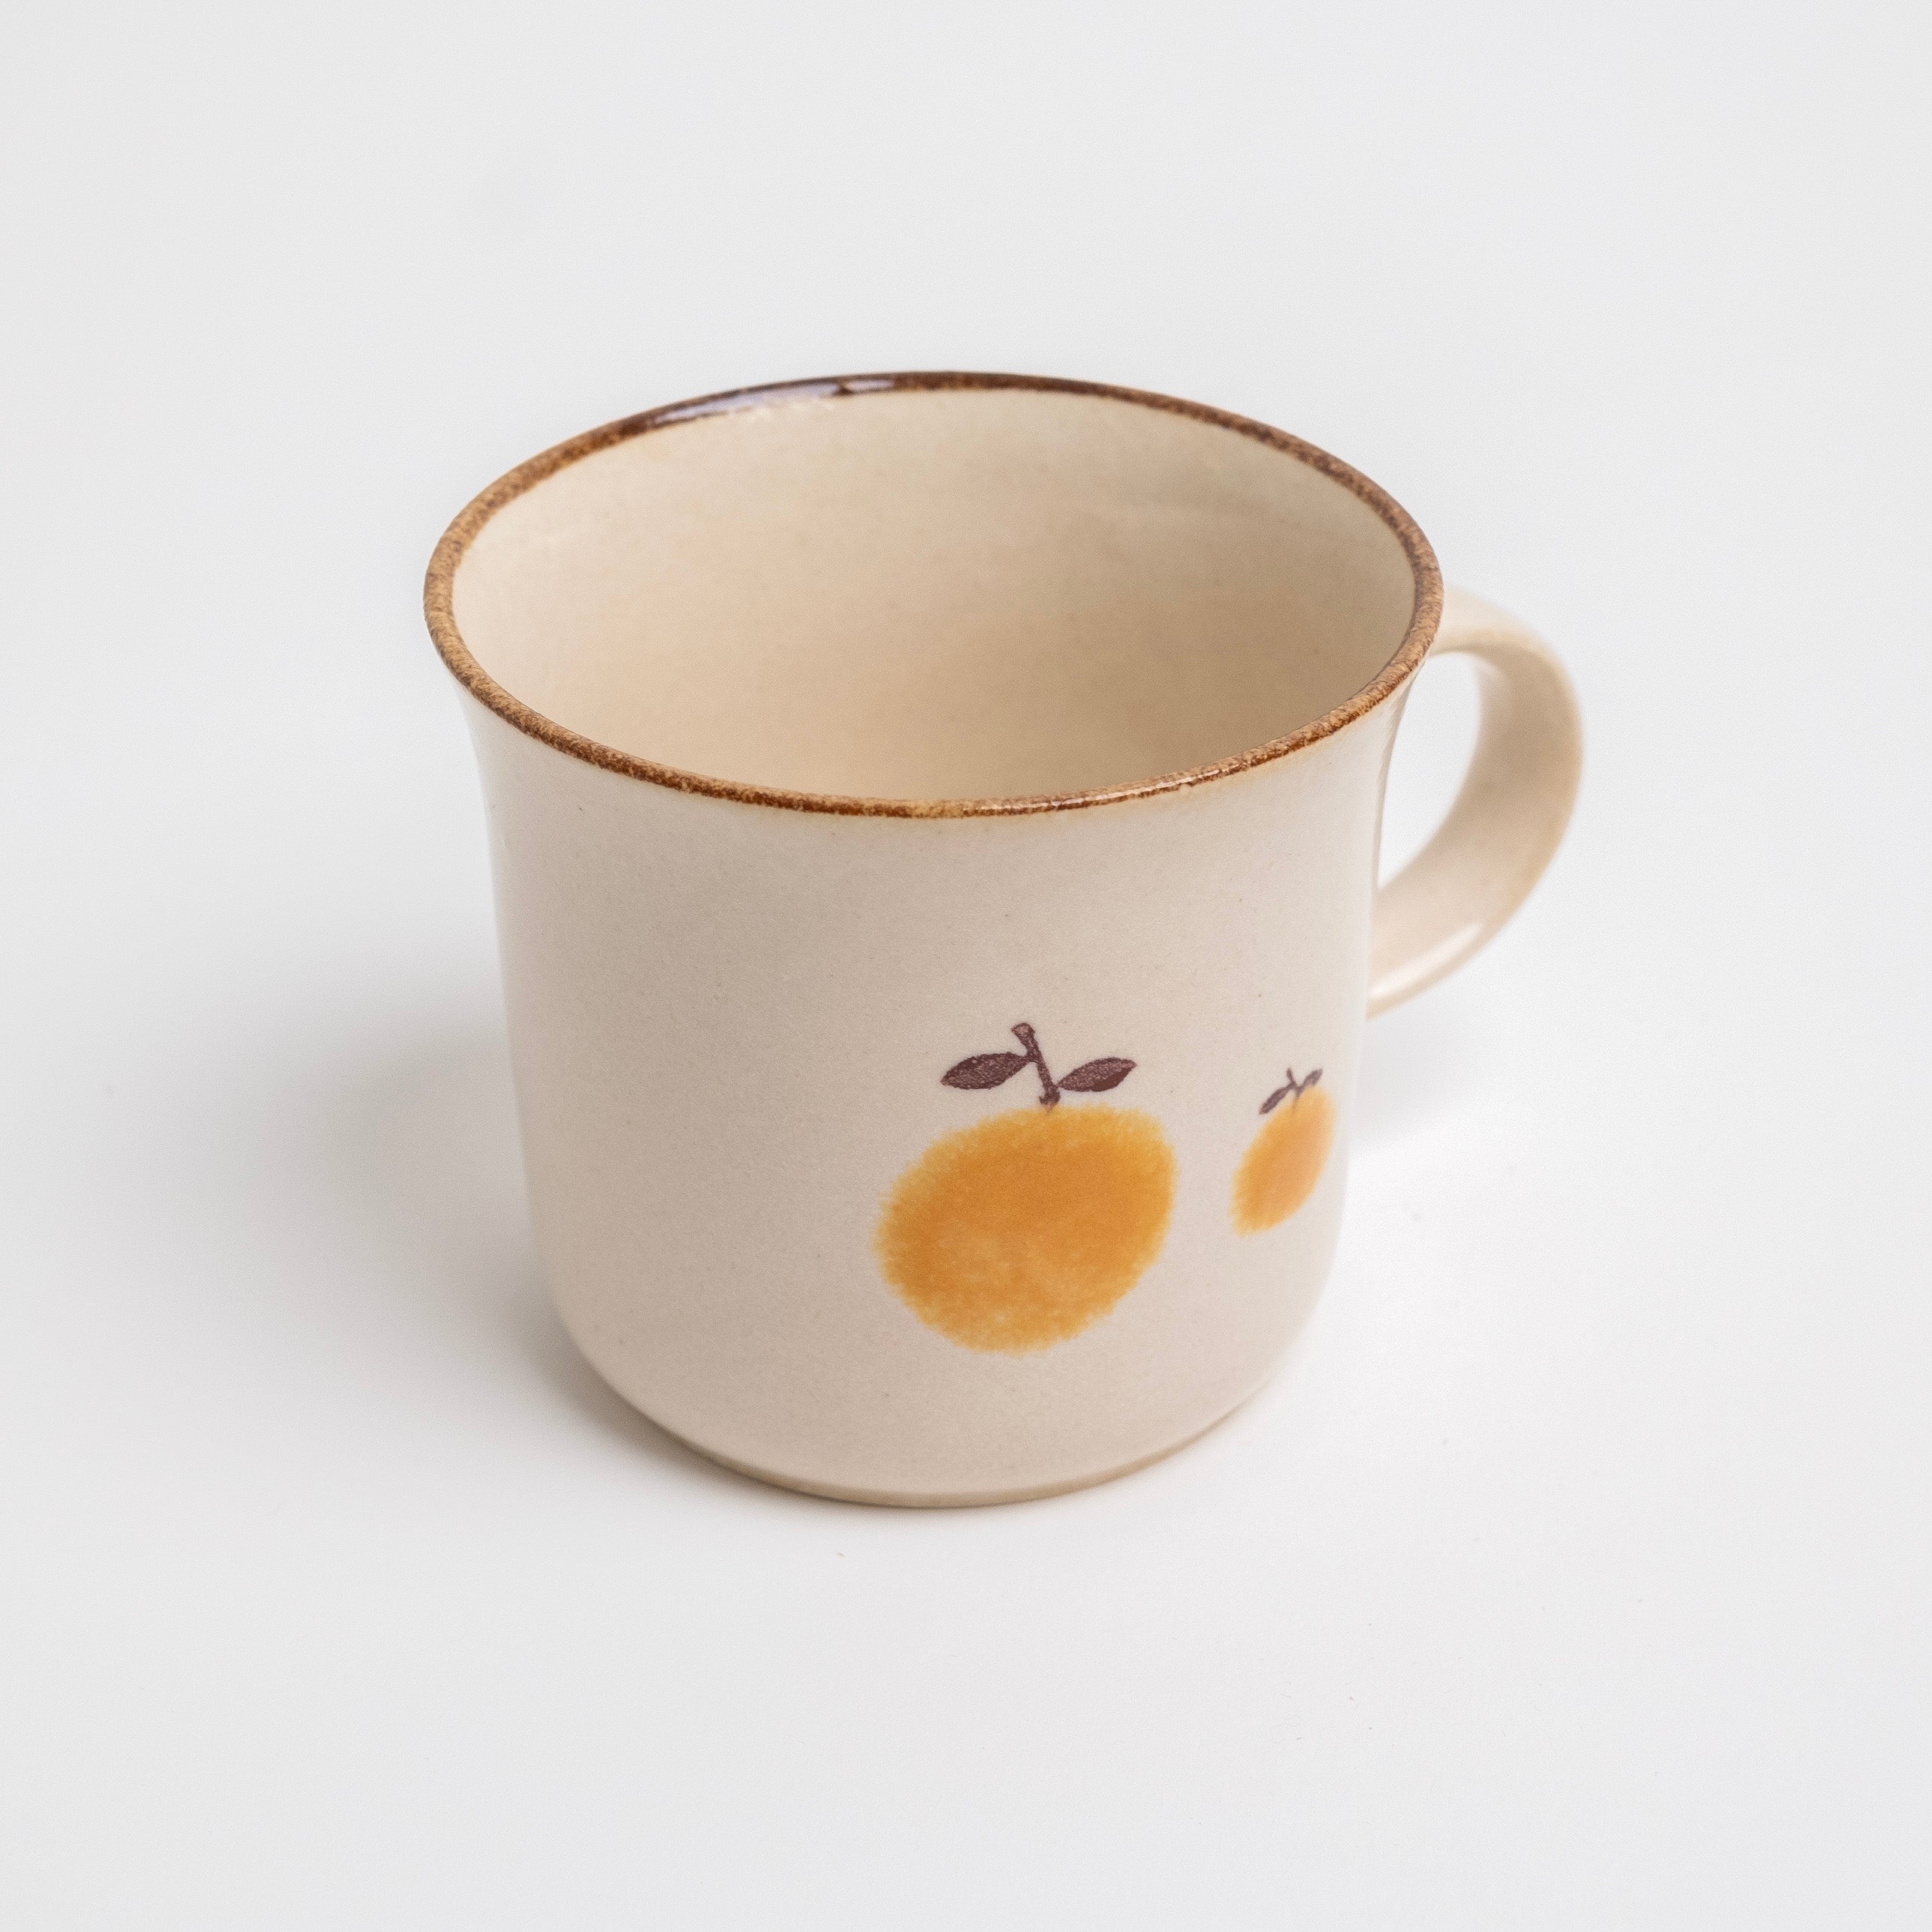 izawa-mandarin-mug-1.jpg